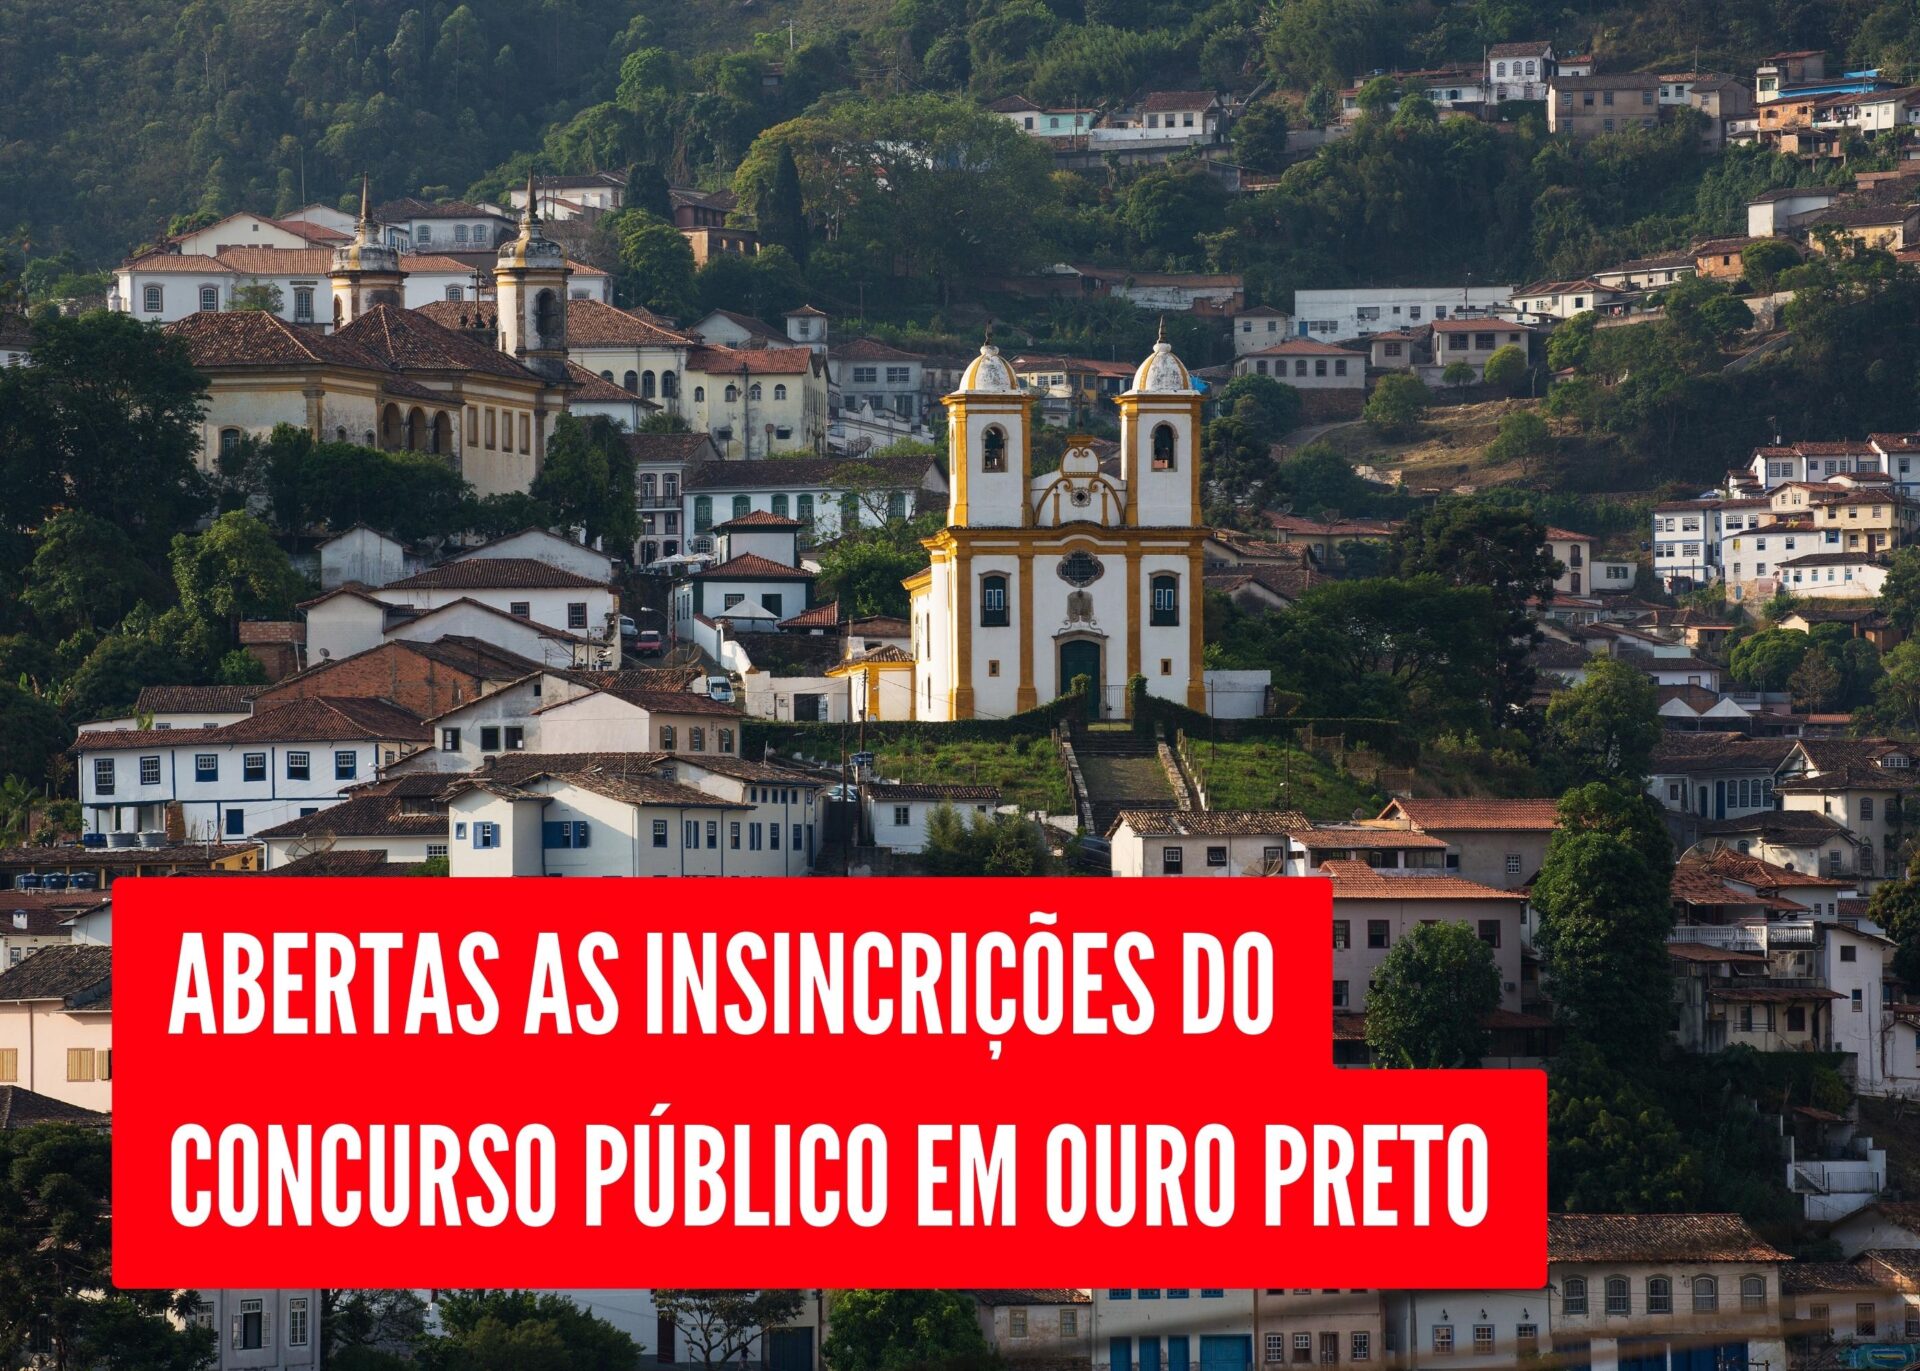 Iniciada as inscrições do concurso público em Ouro Preto, com 376 vagas